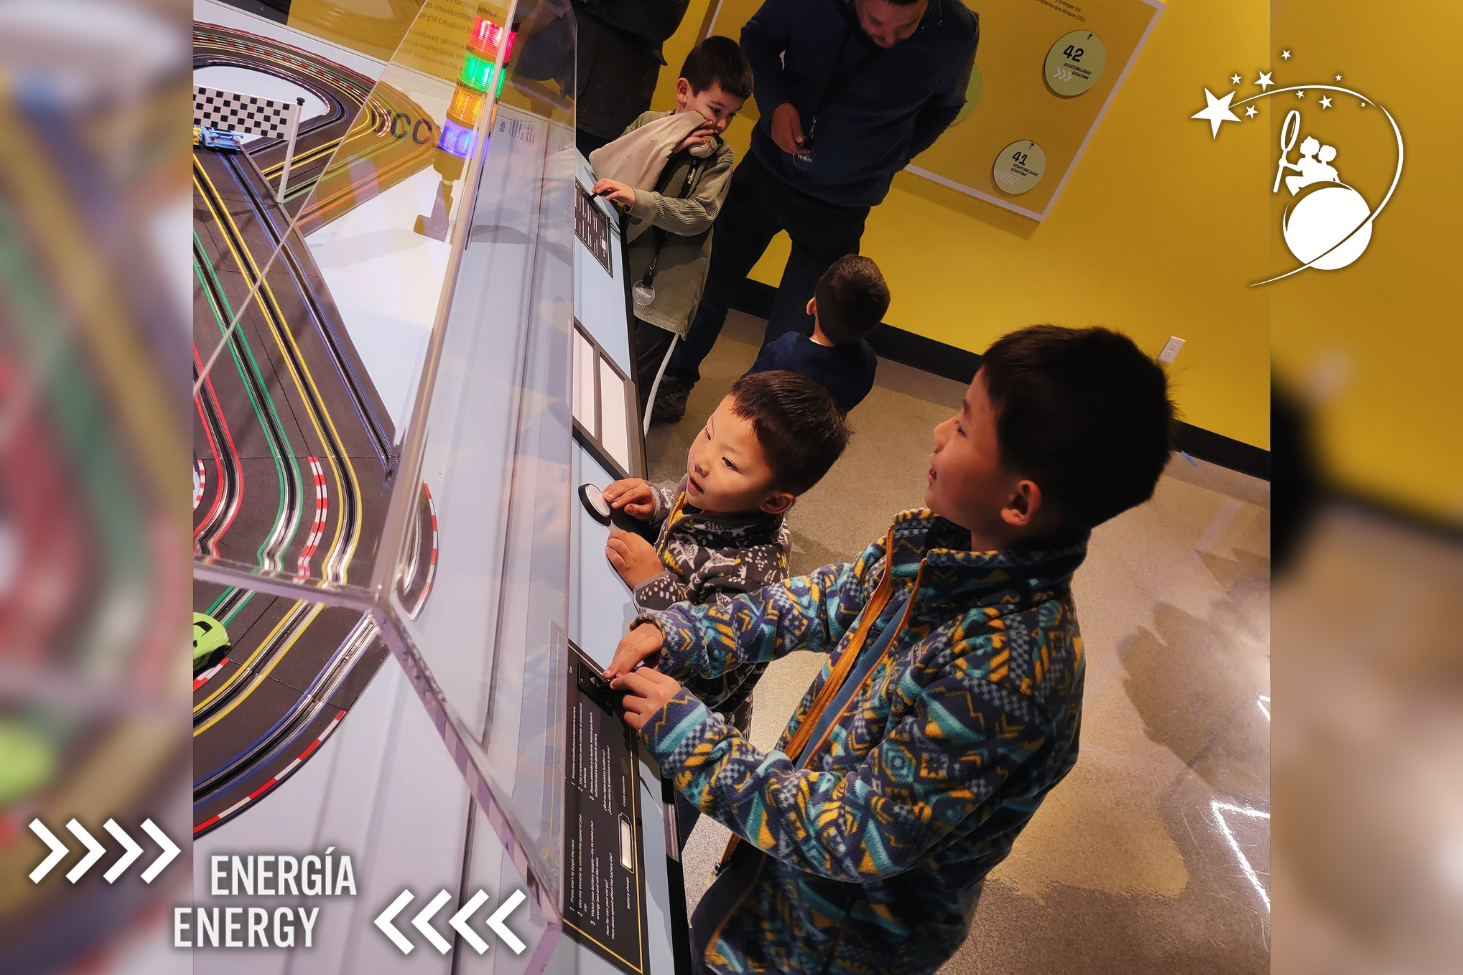 两名男孩在发现儿童博物馆的展览上操控电动玩具车